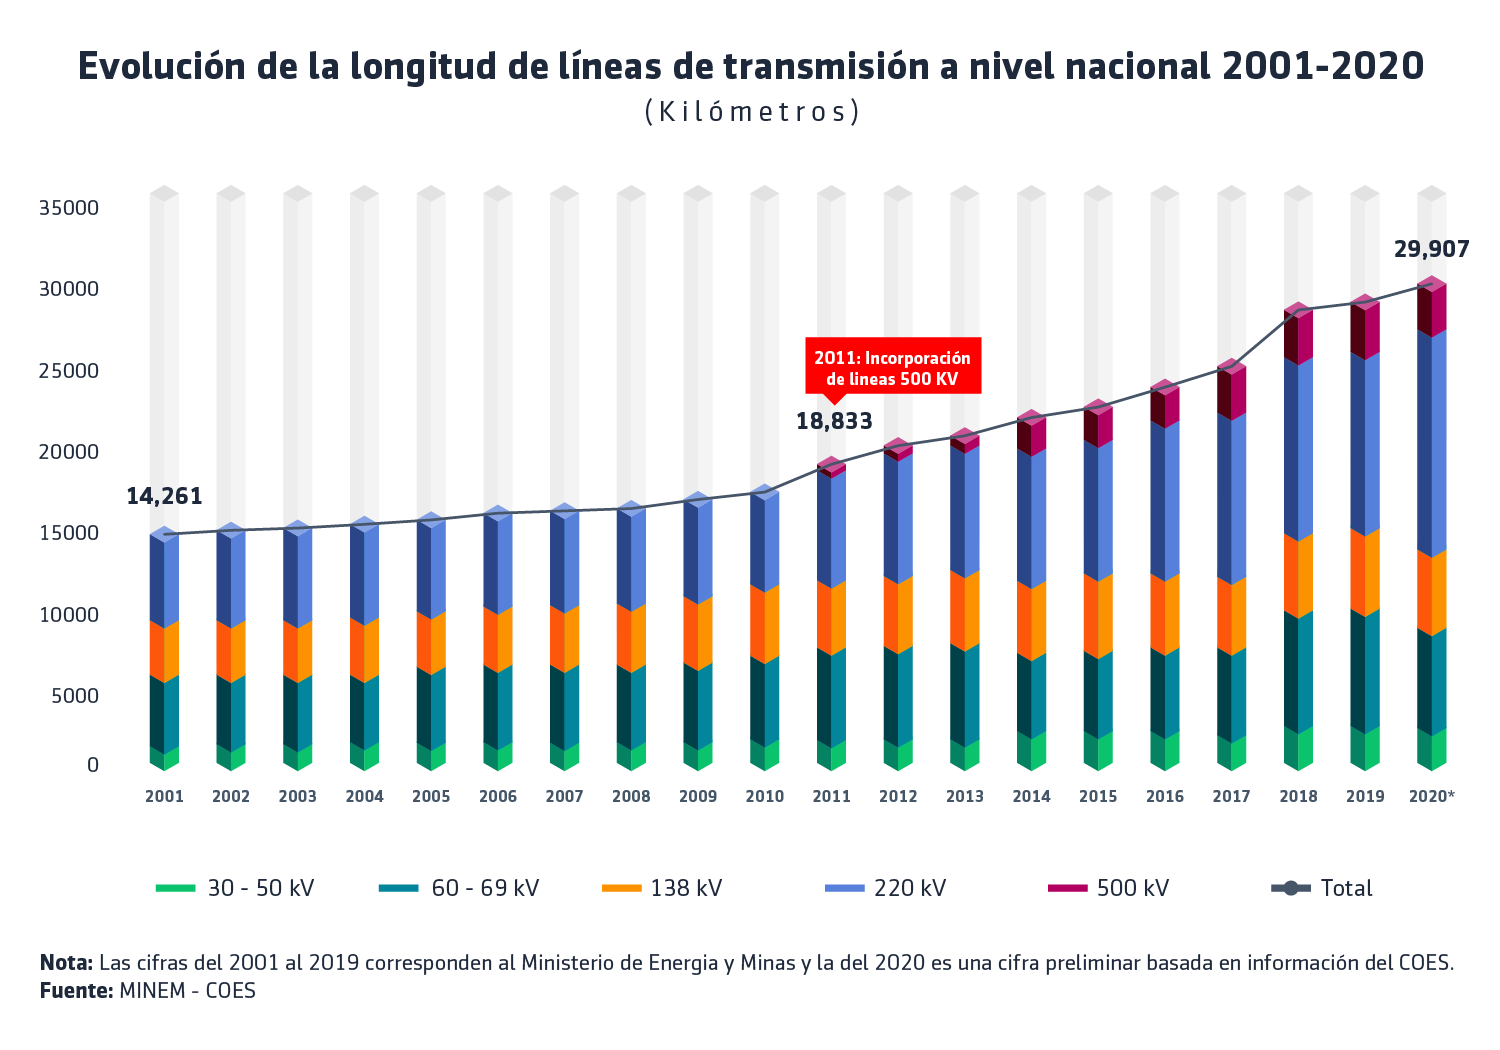 Evolución de la Longitud de Lineas de Transmision a Nivel Nacional